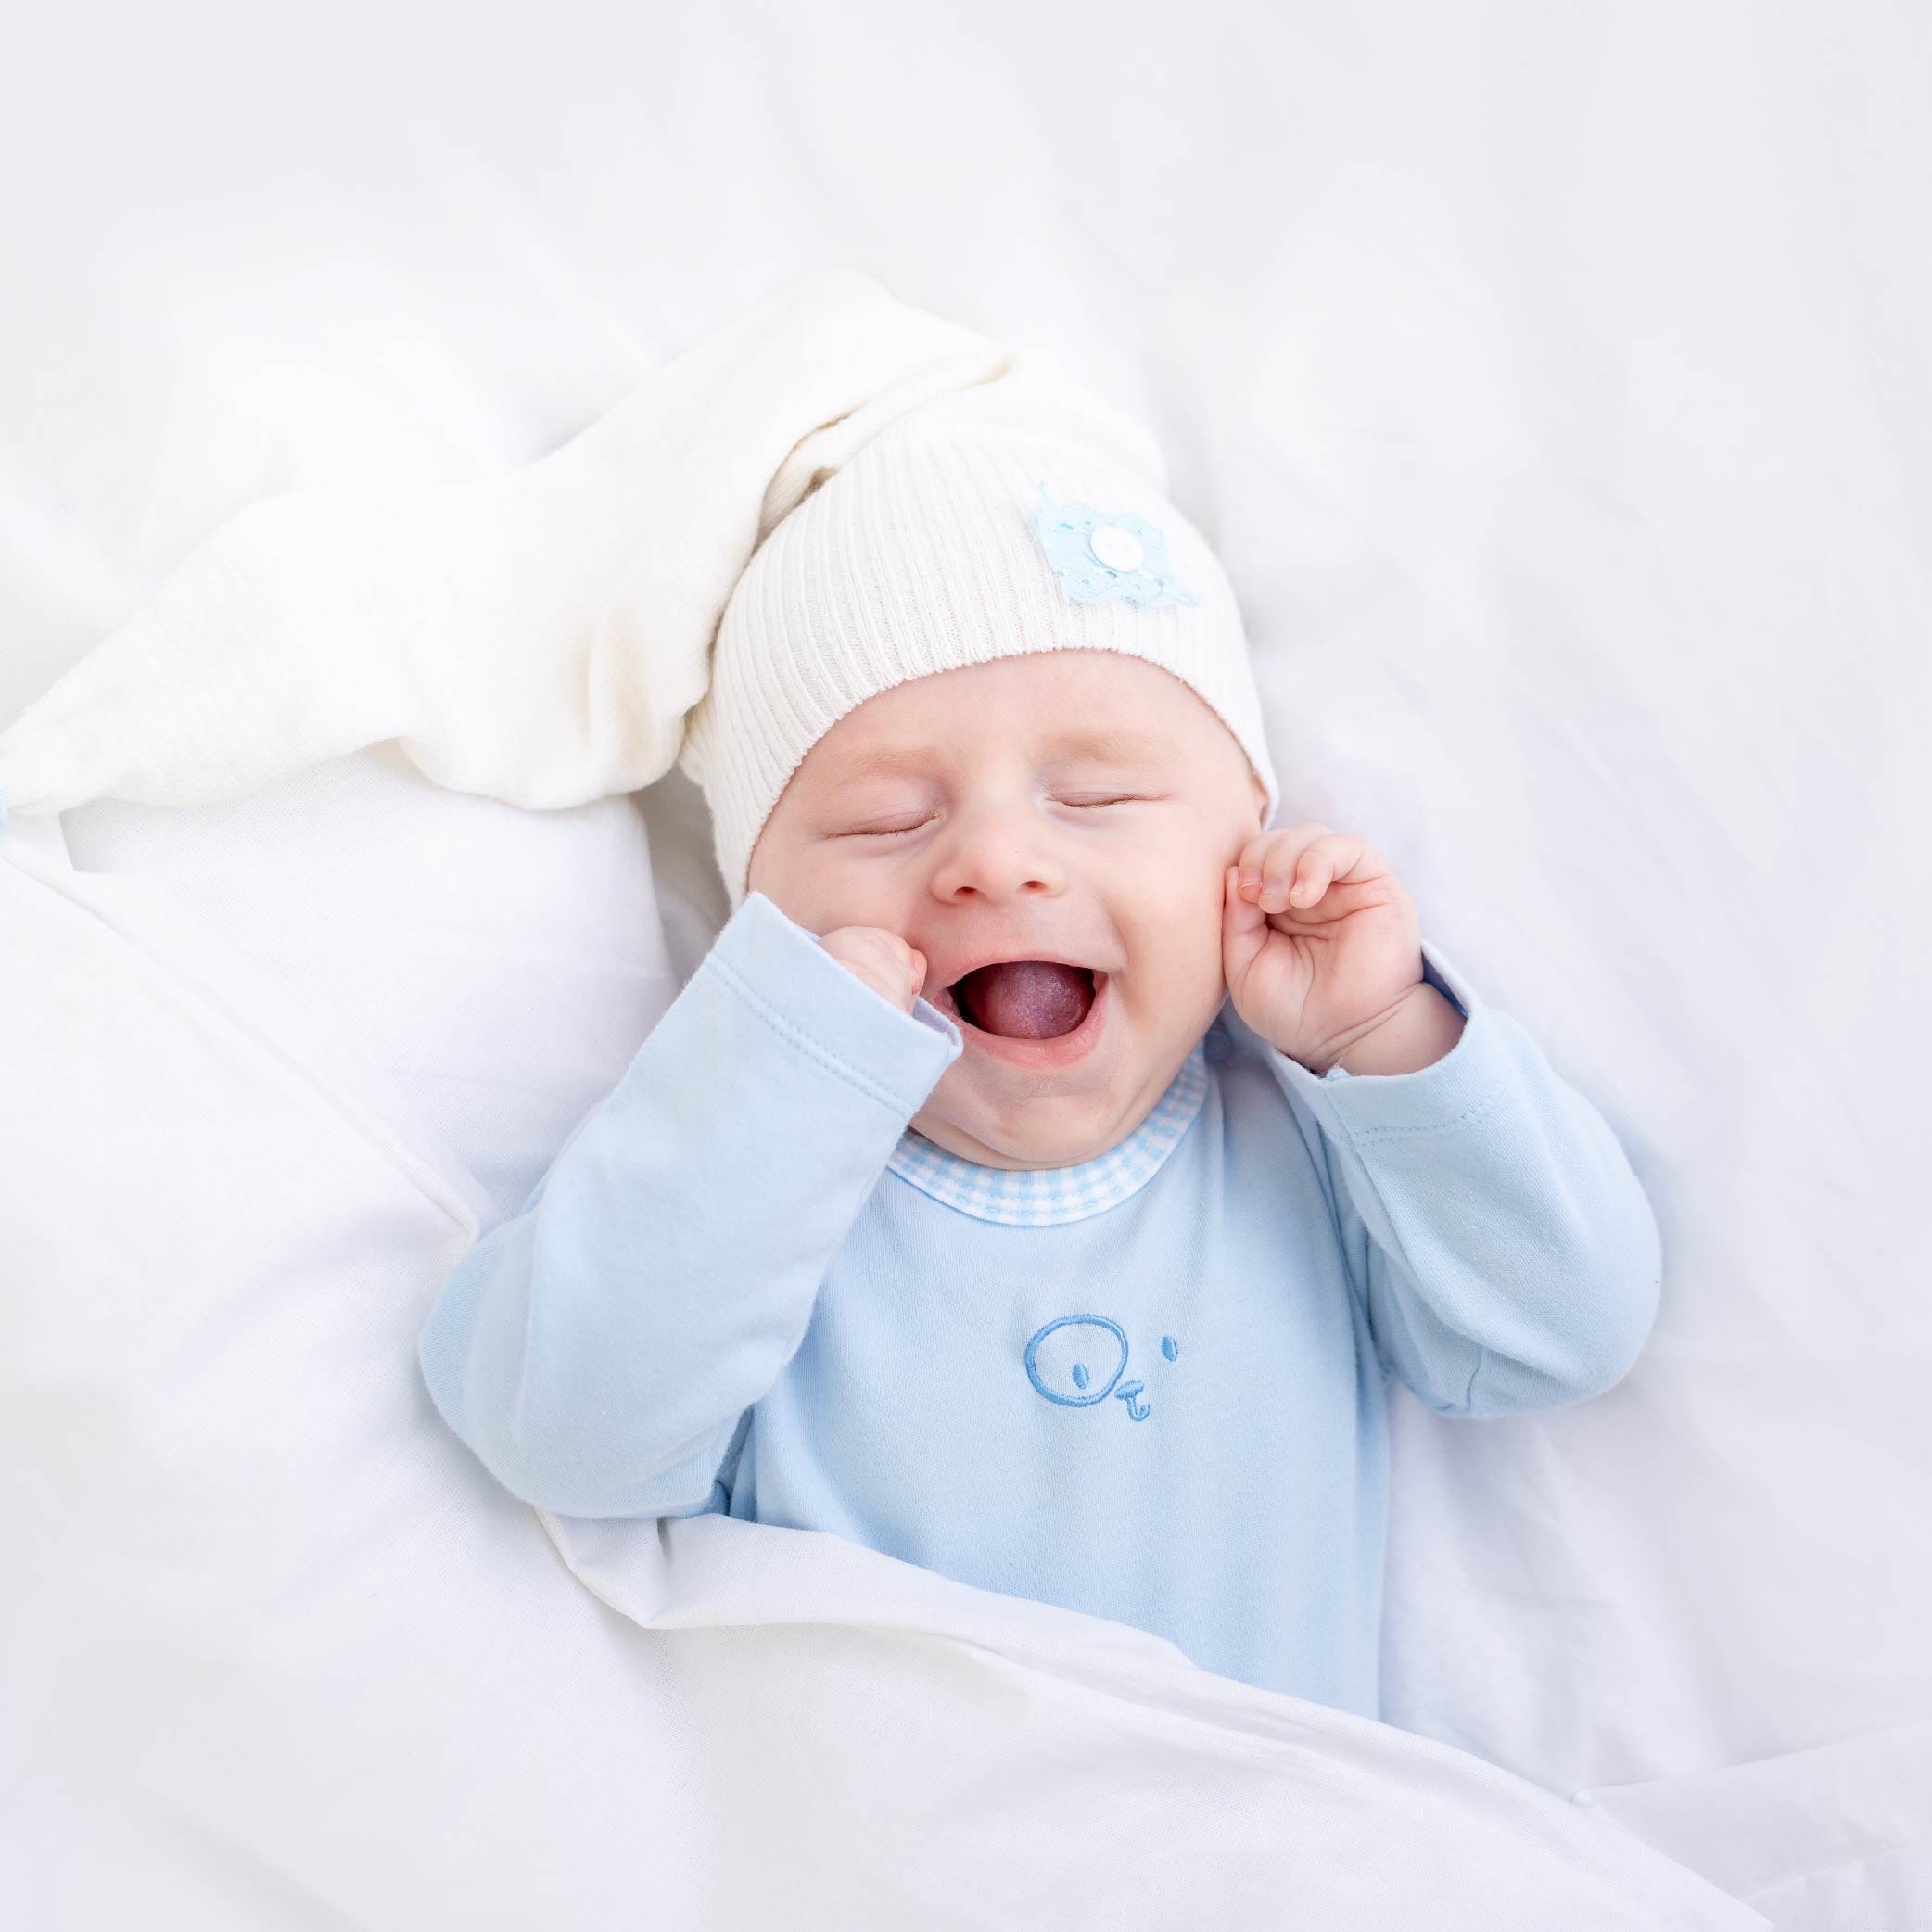 Dicas para melhorar o sono do bebé